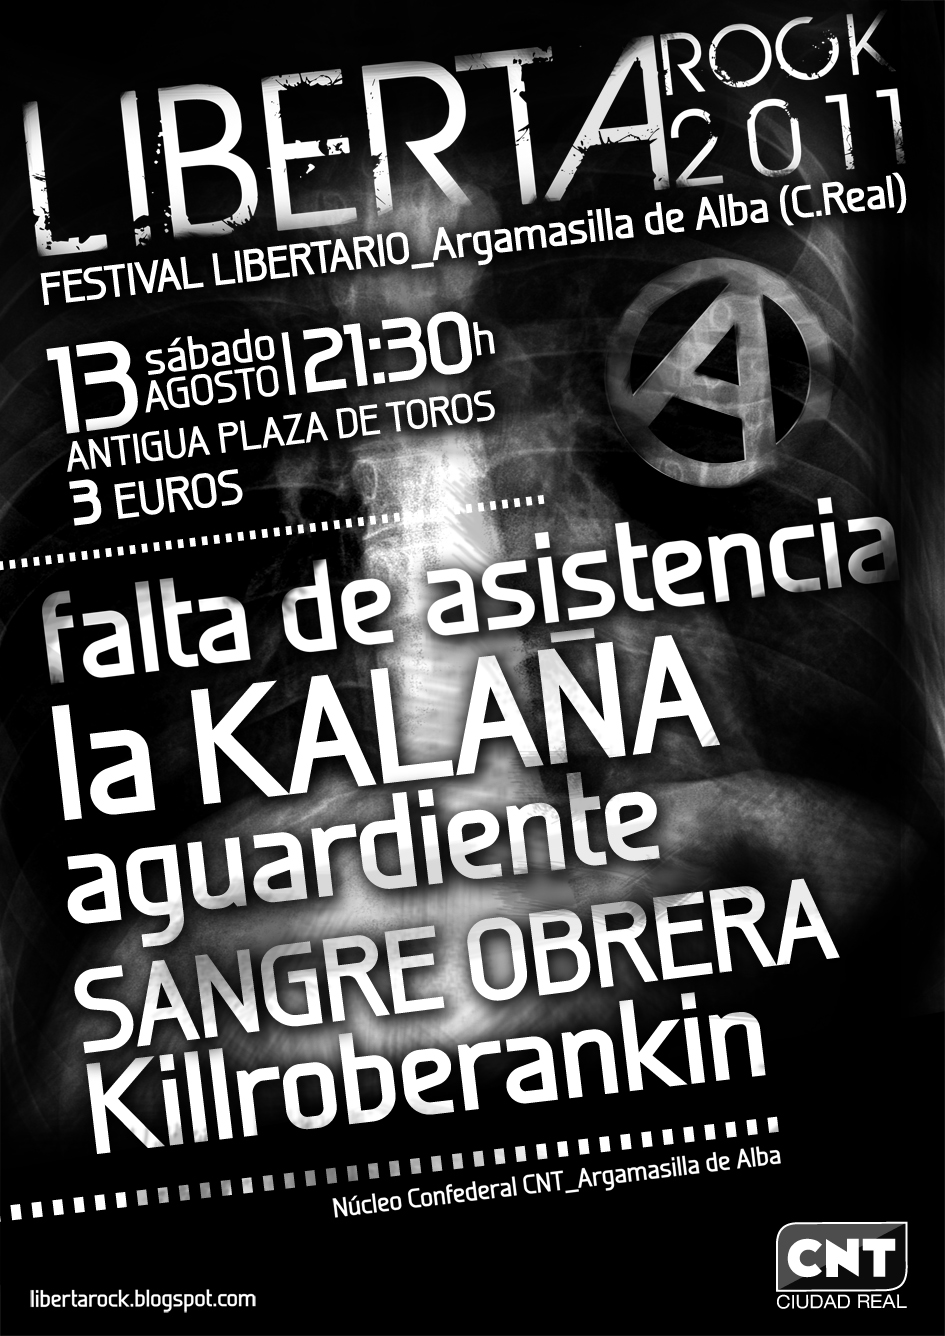 CNT organiza el festival Libertarock 2011 en Argamasilla de Alba